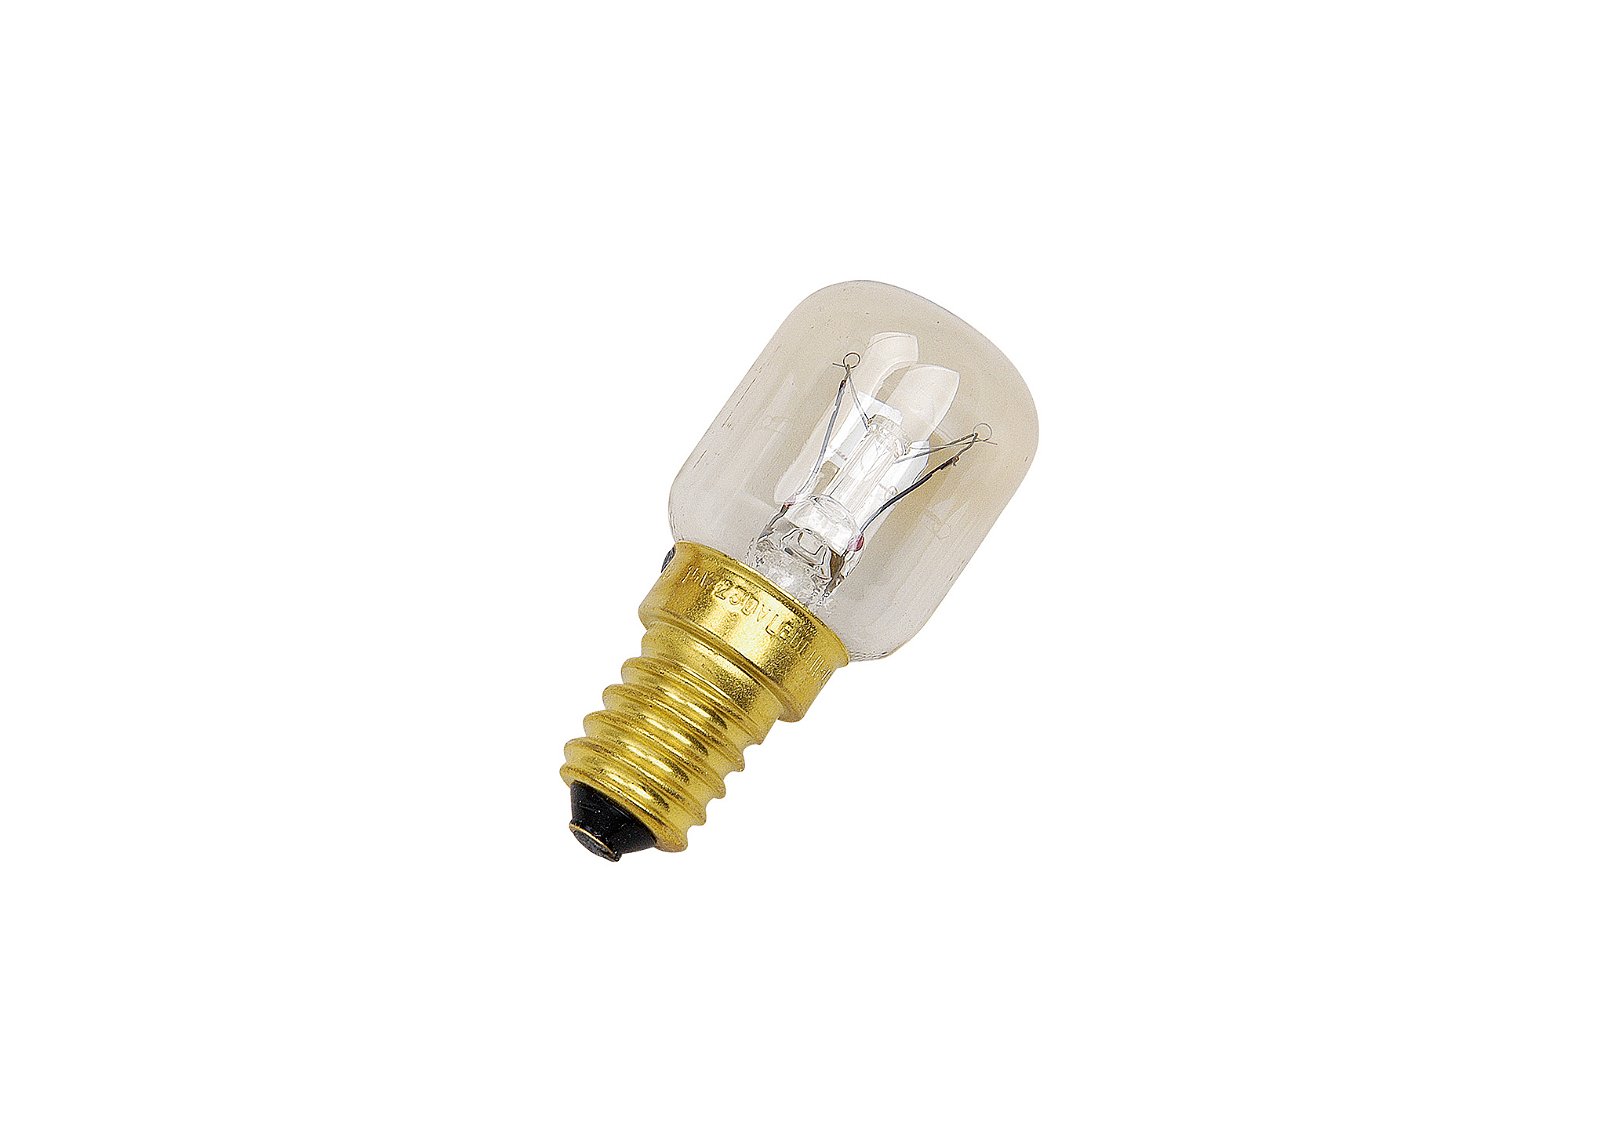 Ampoule de rechange 15W pour éclairage électrique, filetage E14